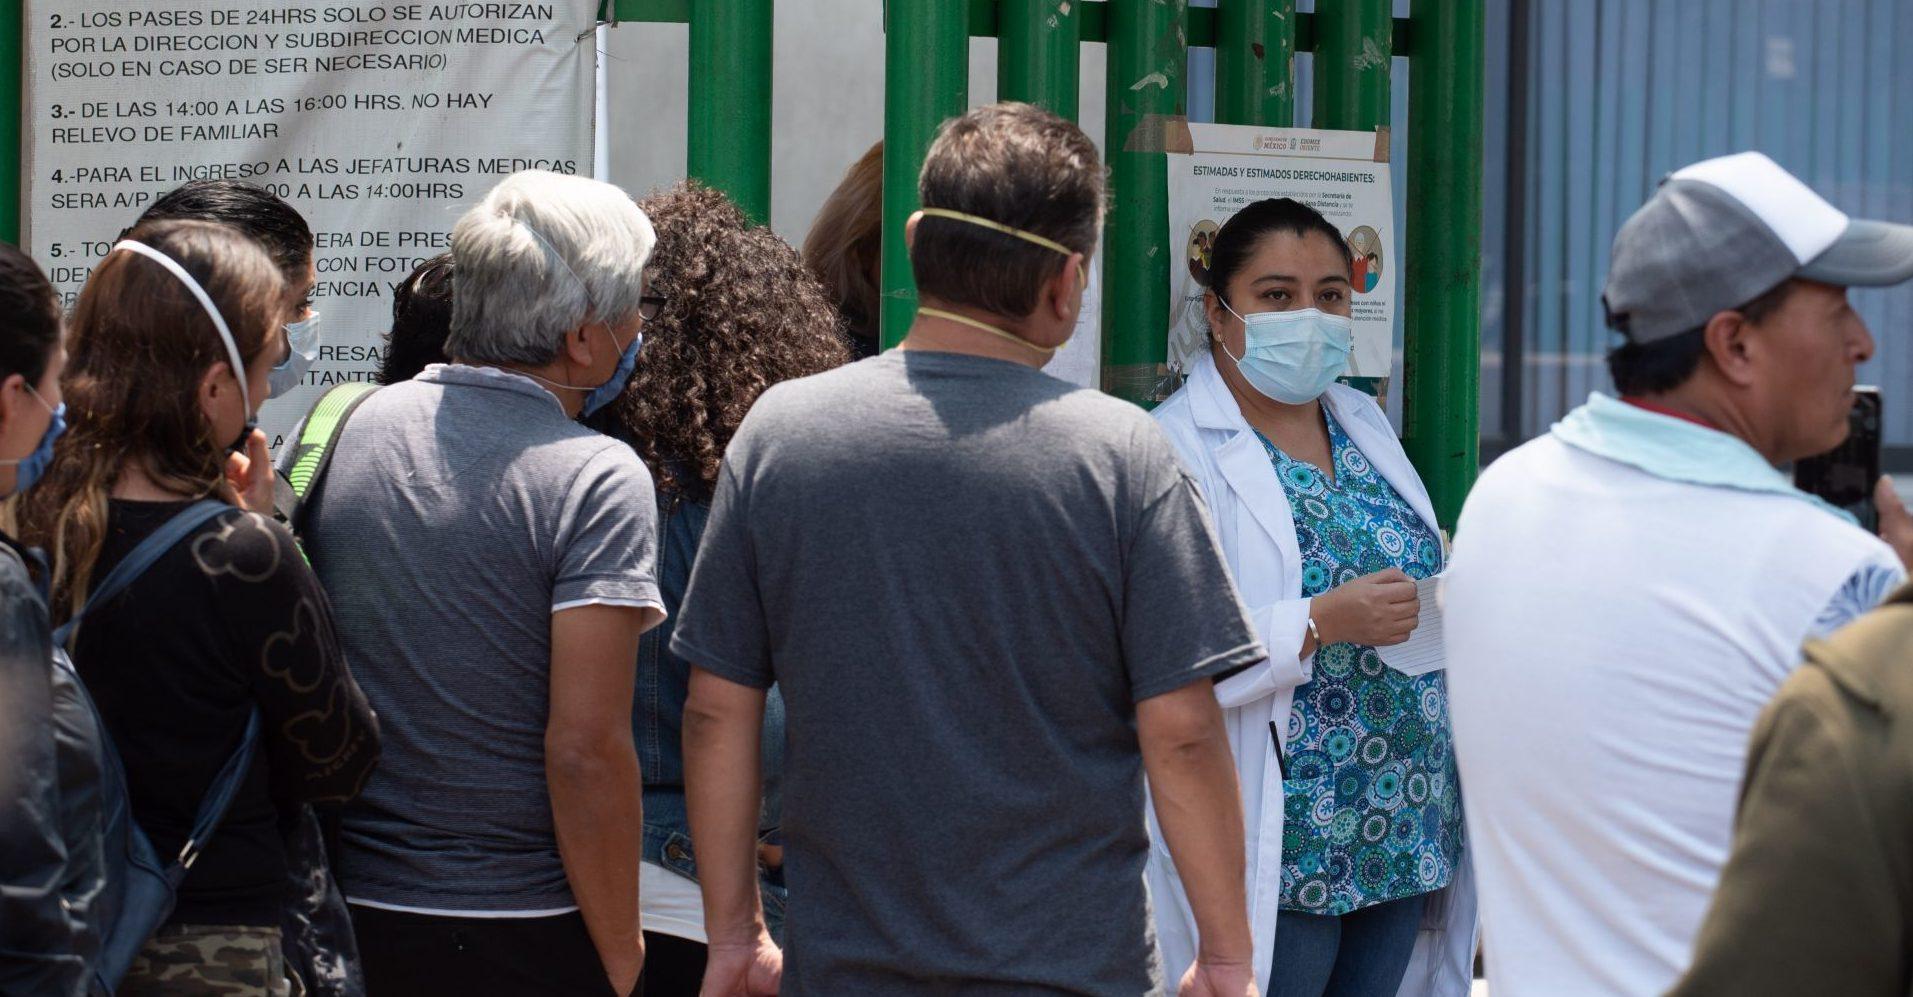 “No sé a quién tenerle más miedo, al COVID o a las personas”, relata personal médico agredido en México